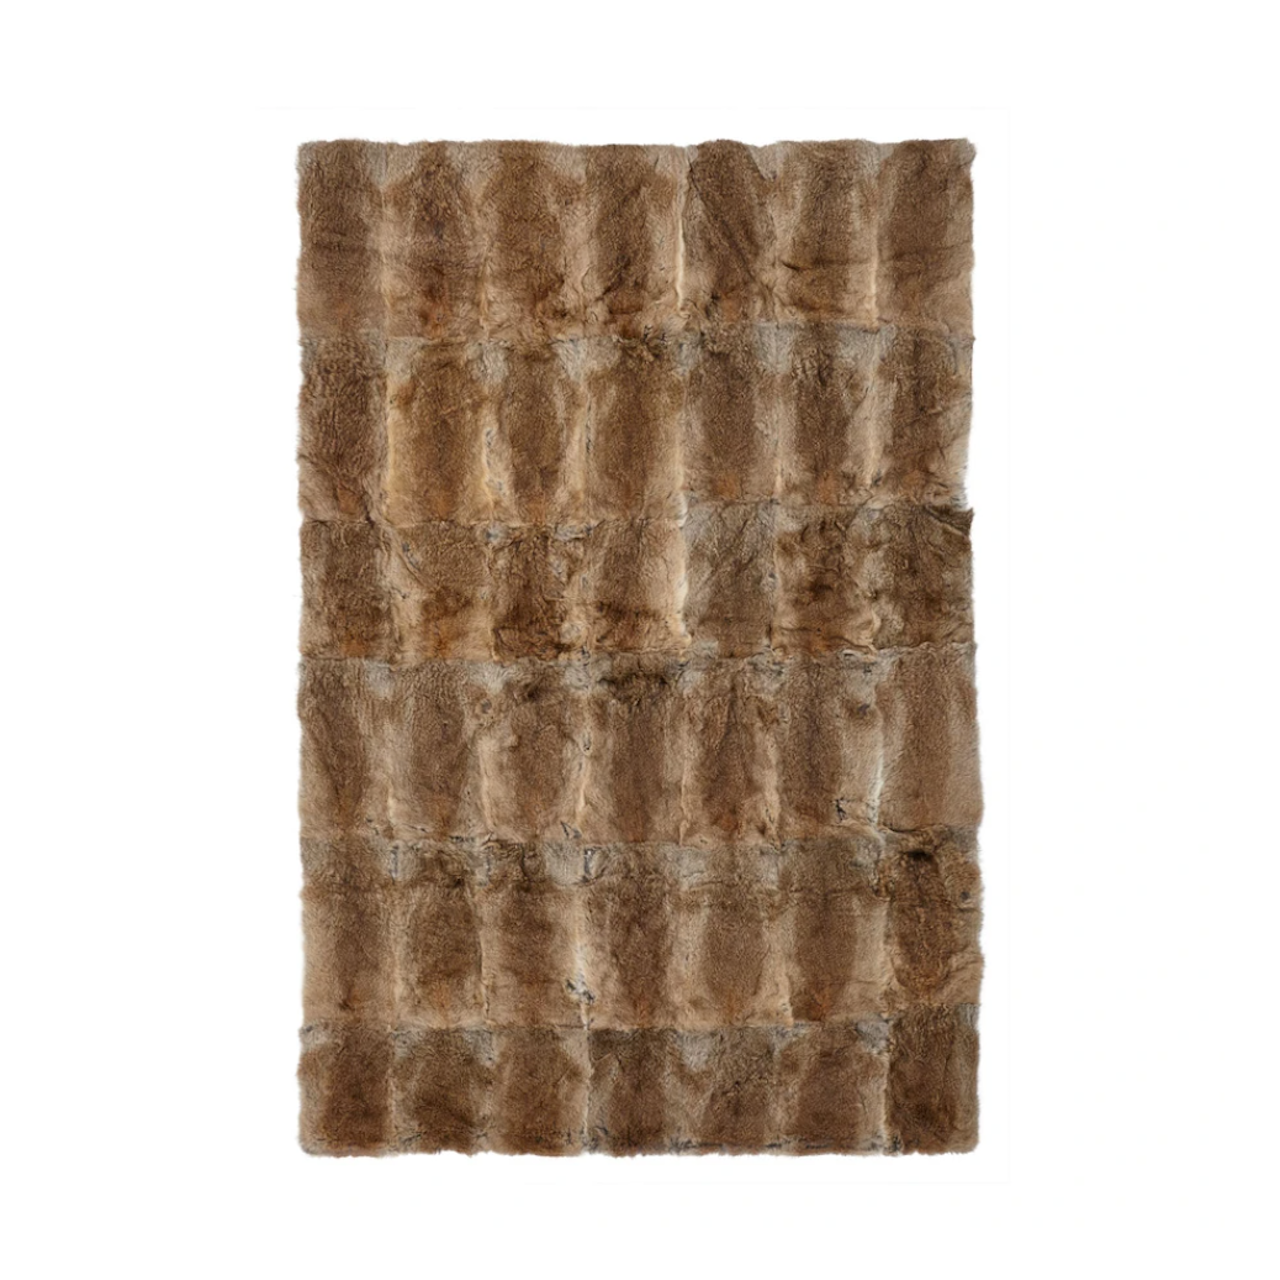 Sengetæppe eller Plaid i Pels fra NATURES, 120x180